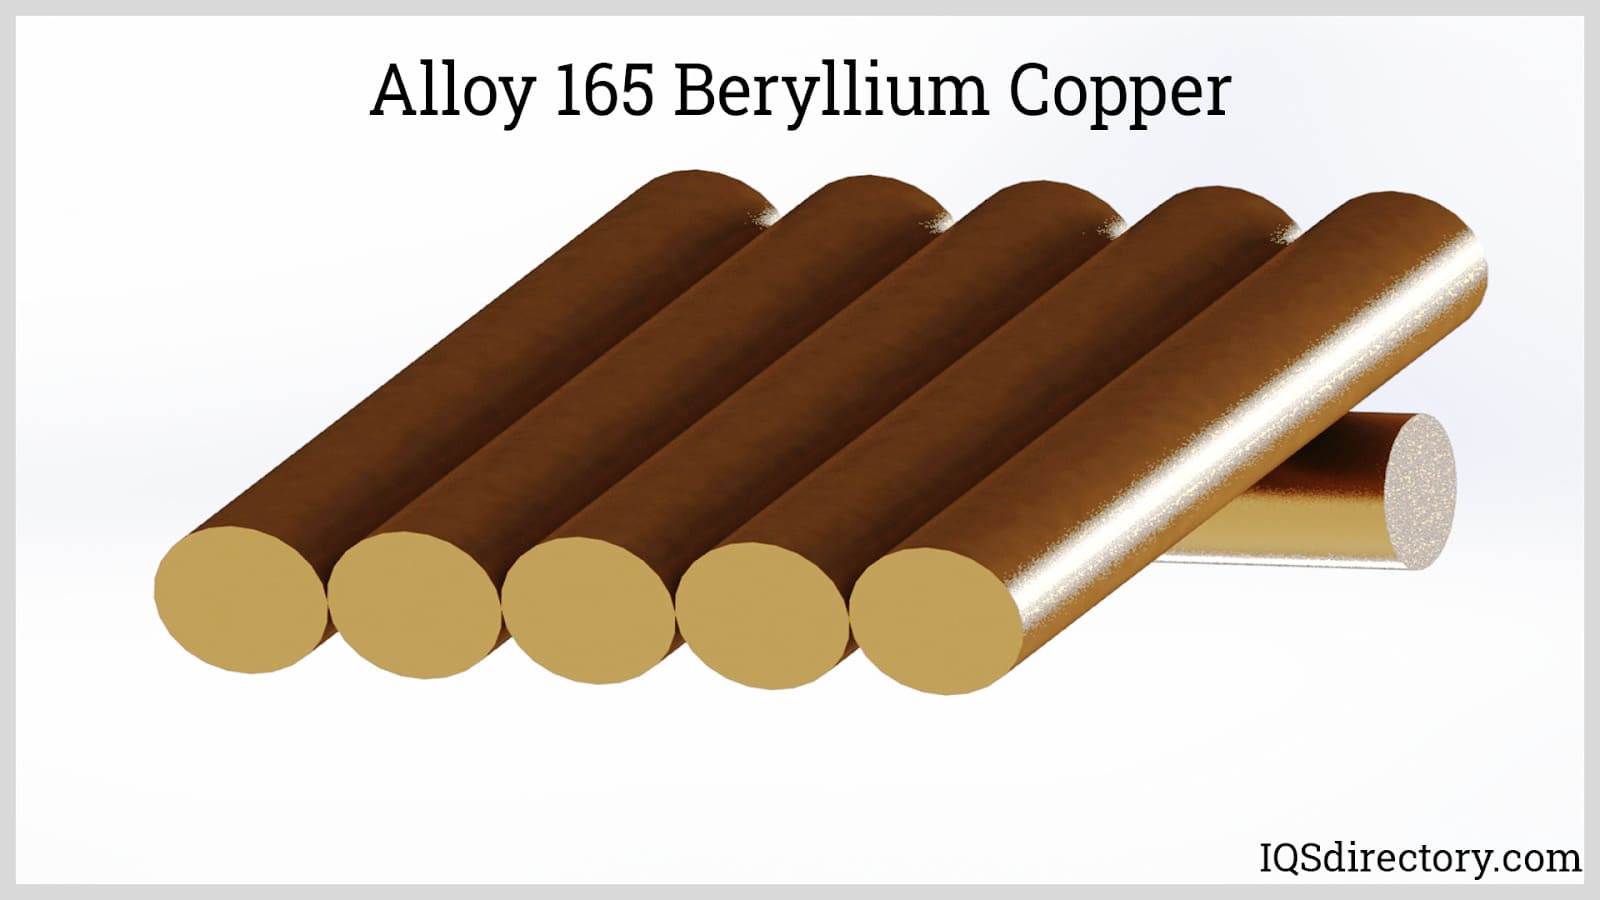 Alloy 165 Beryllium Copper